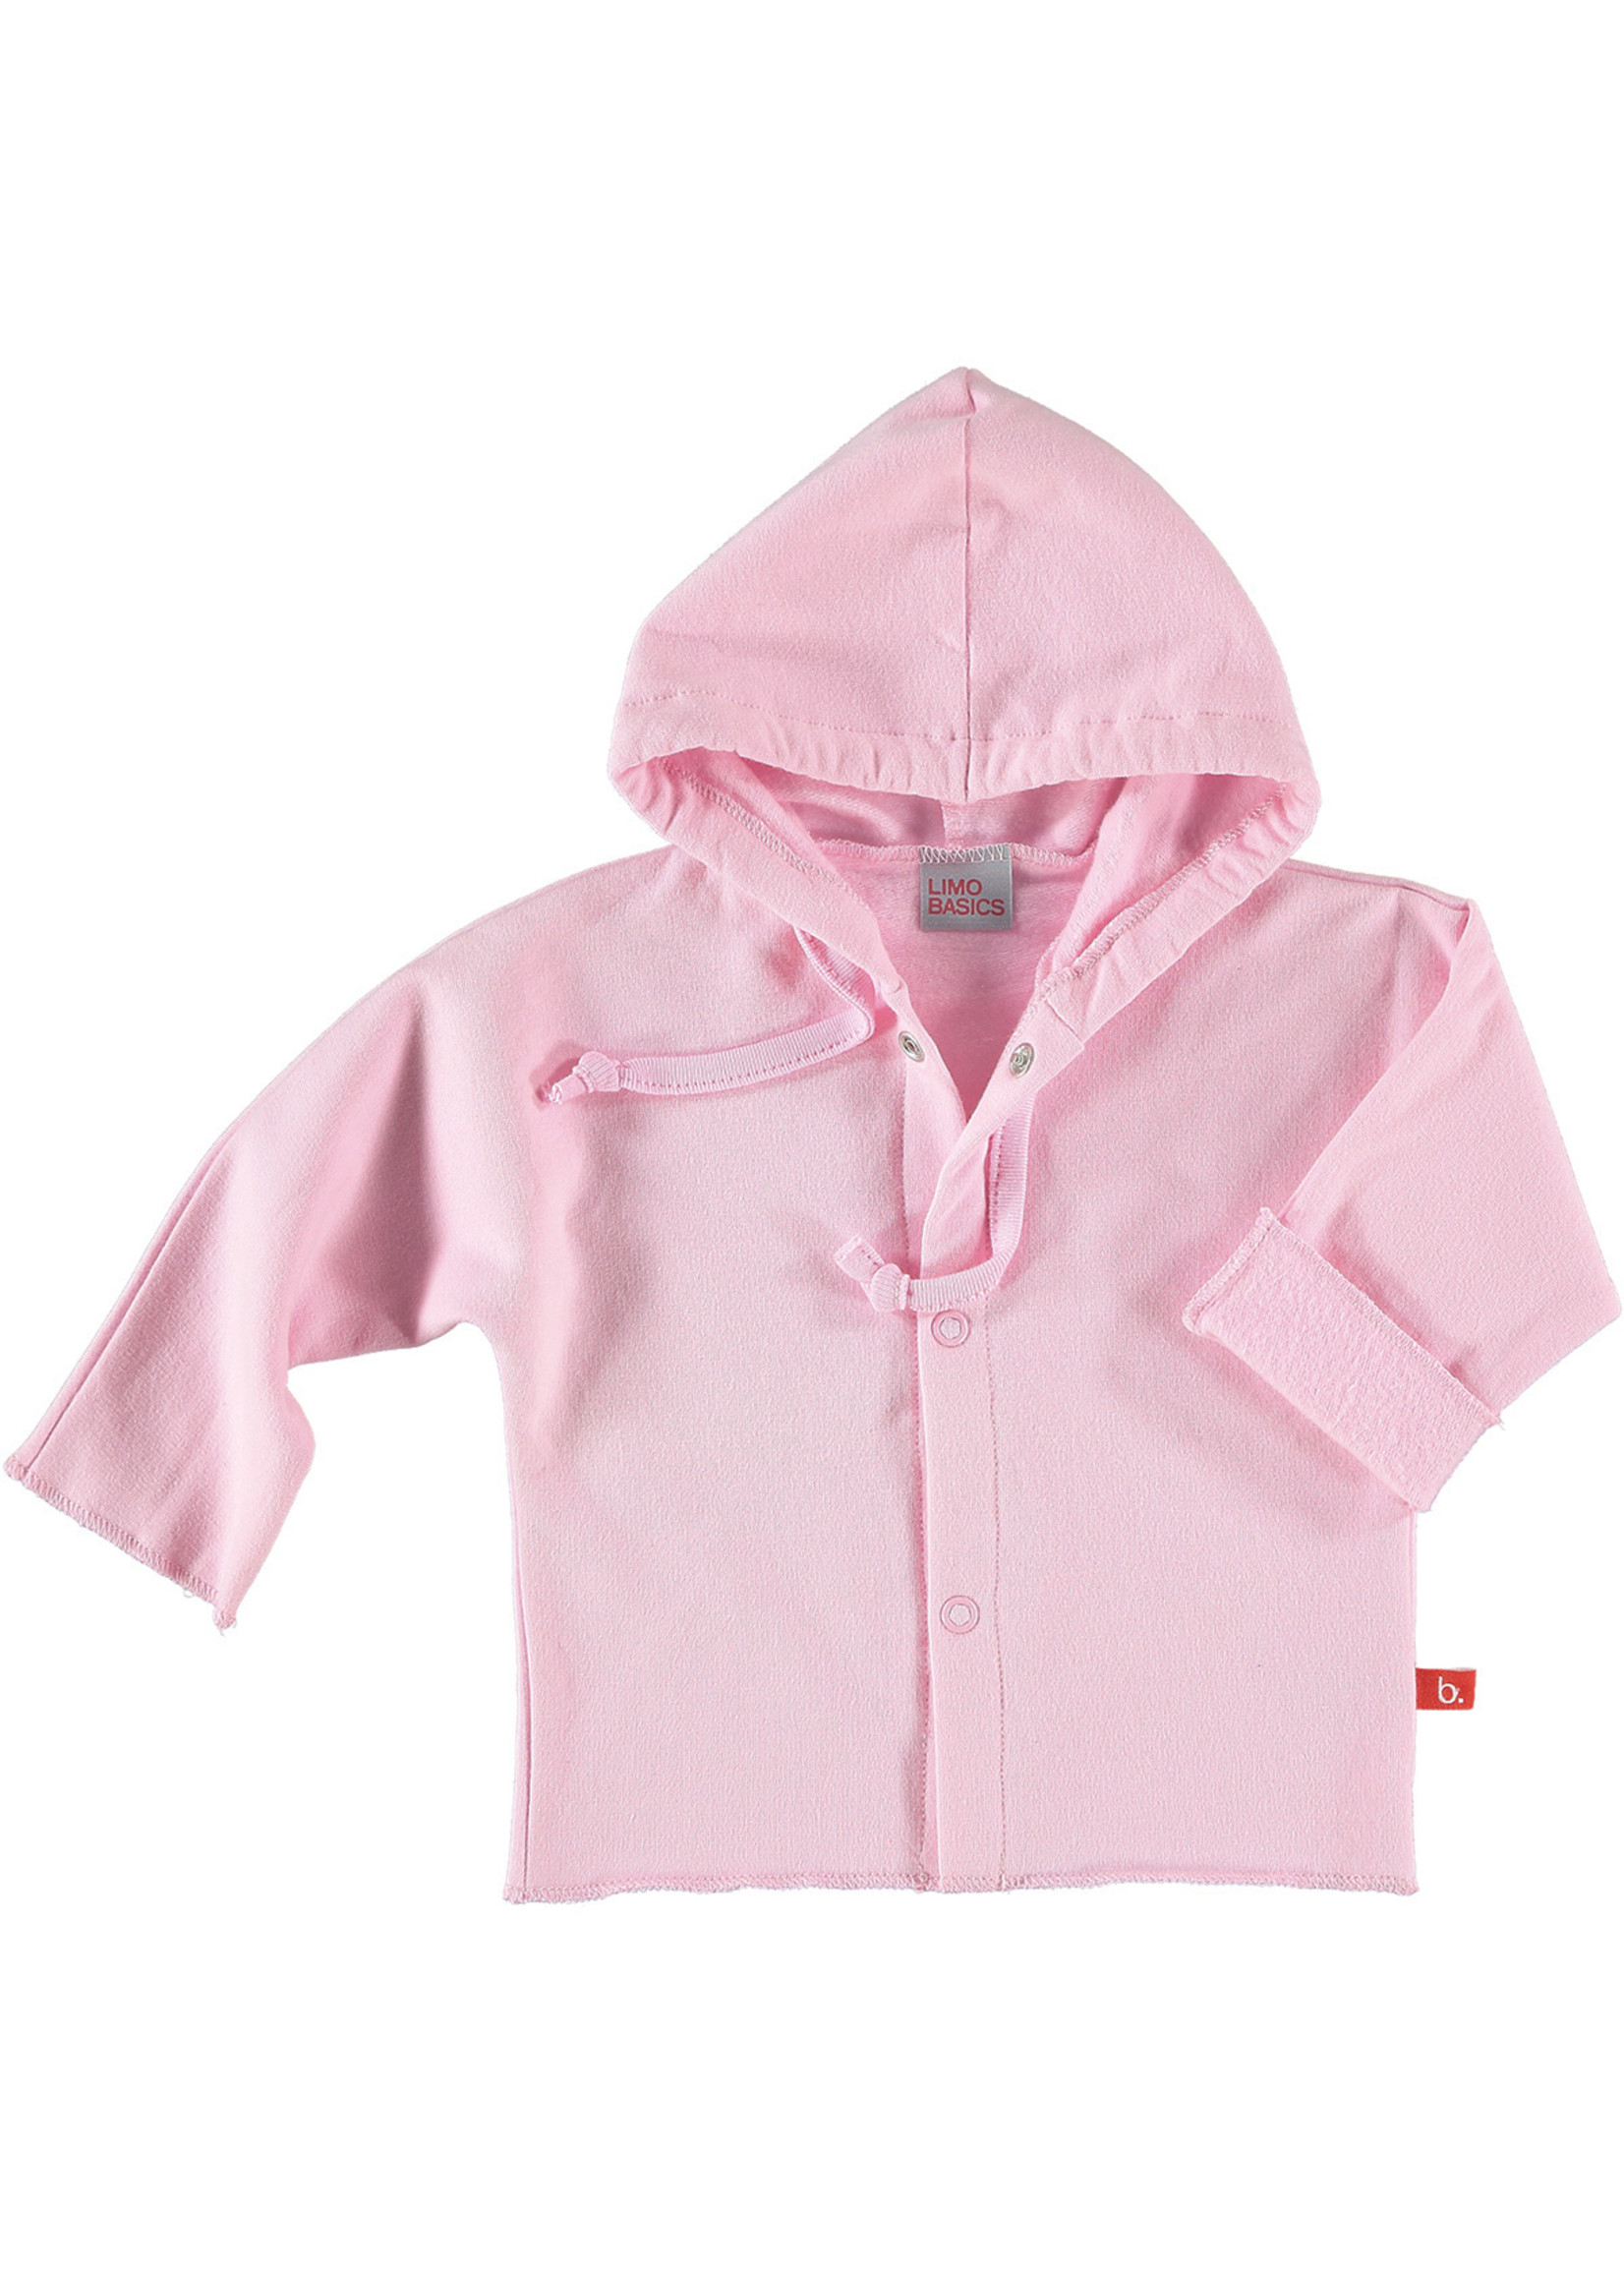 Limo basics Baby jacket organic sweatshirt pink 74/80